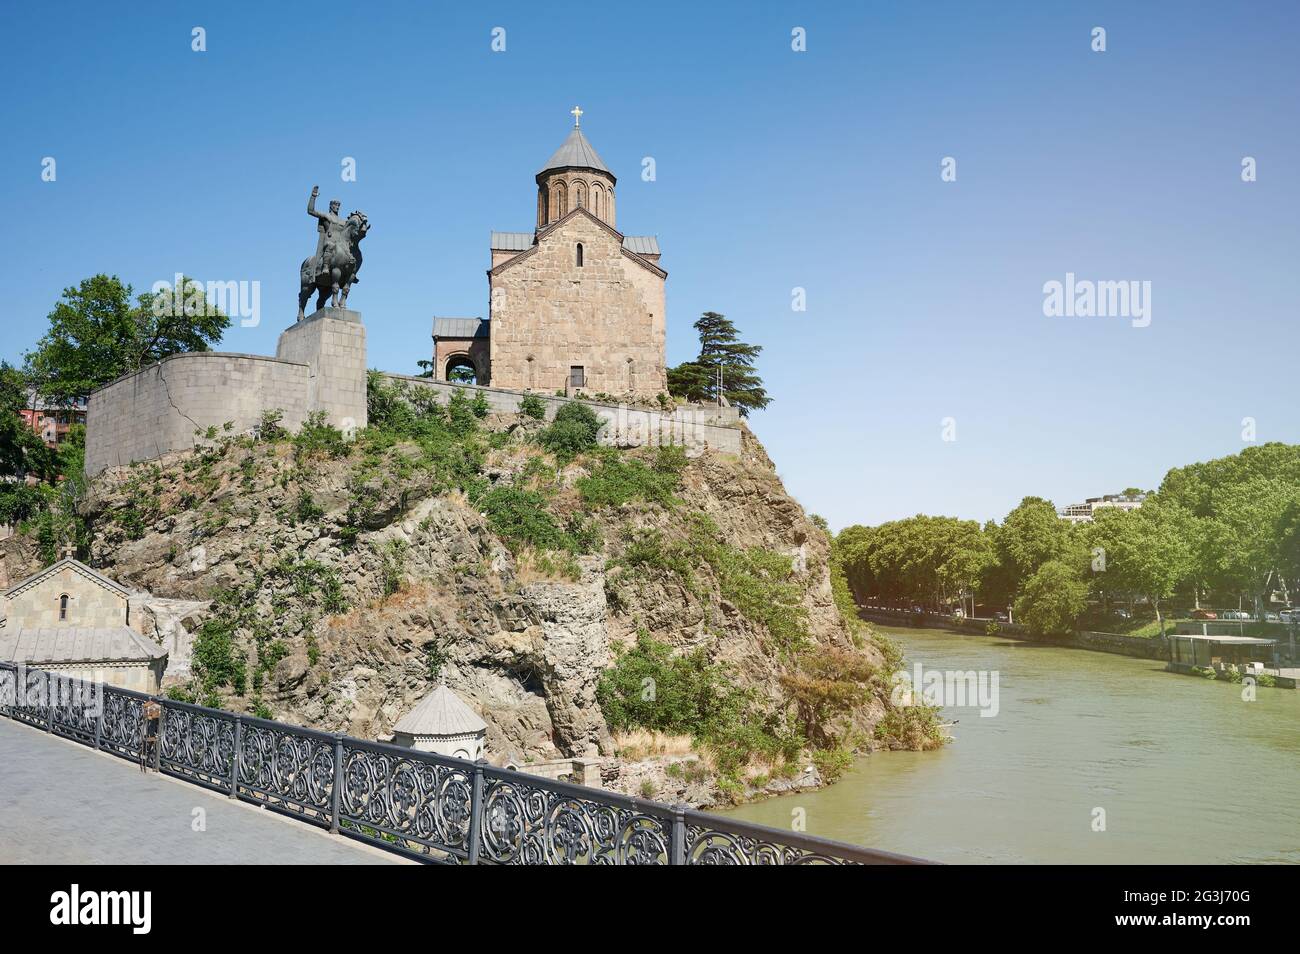 Tempel im Zentrum von Tiflis mit Statue auf Klippe Fluss Stockfoto